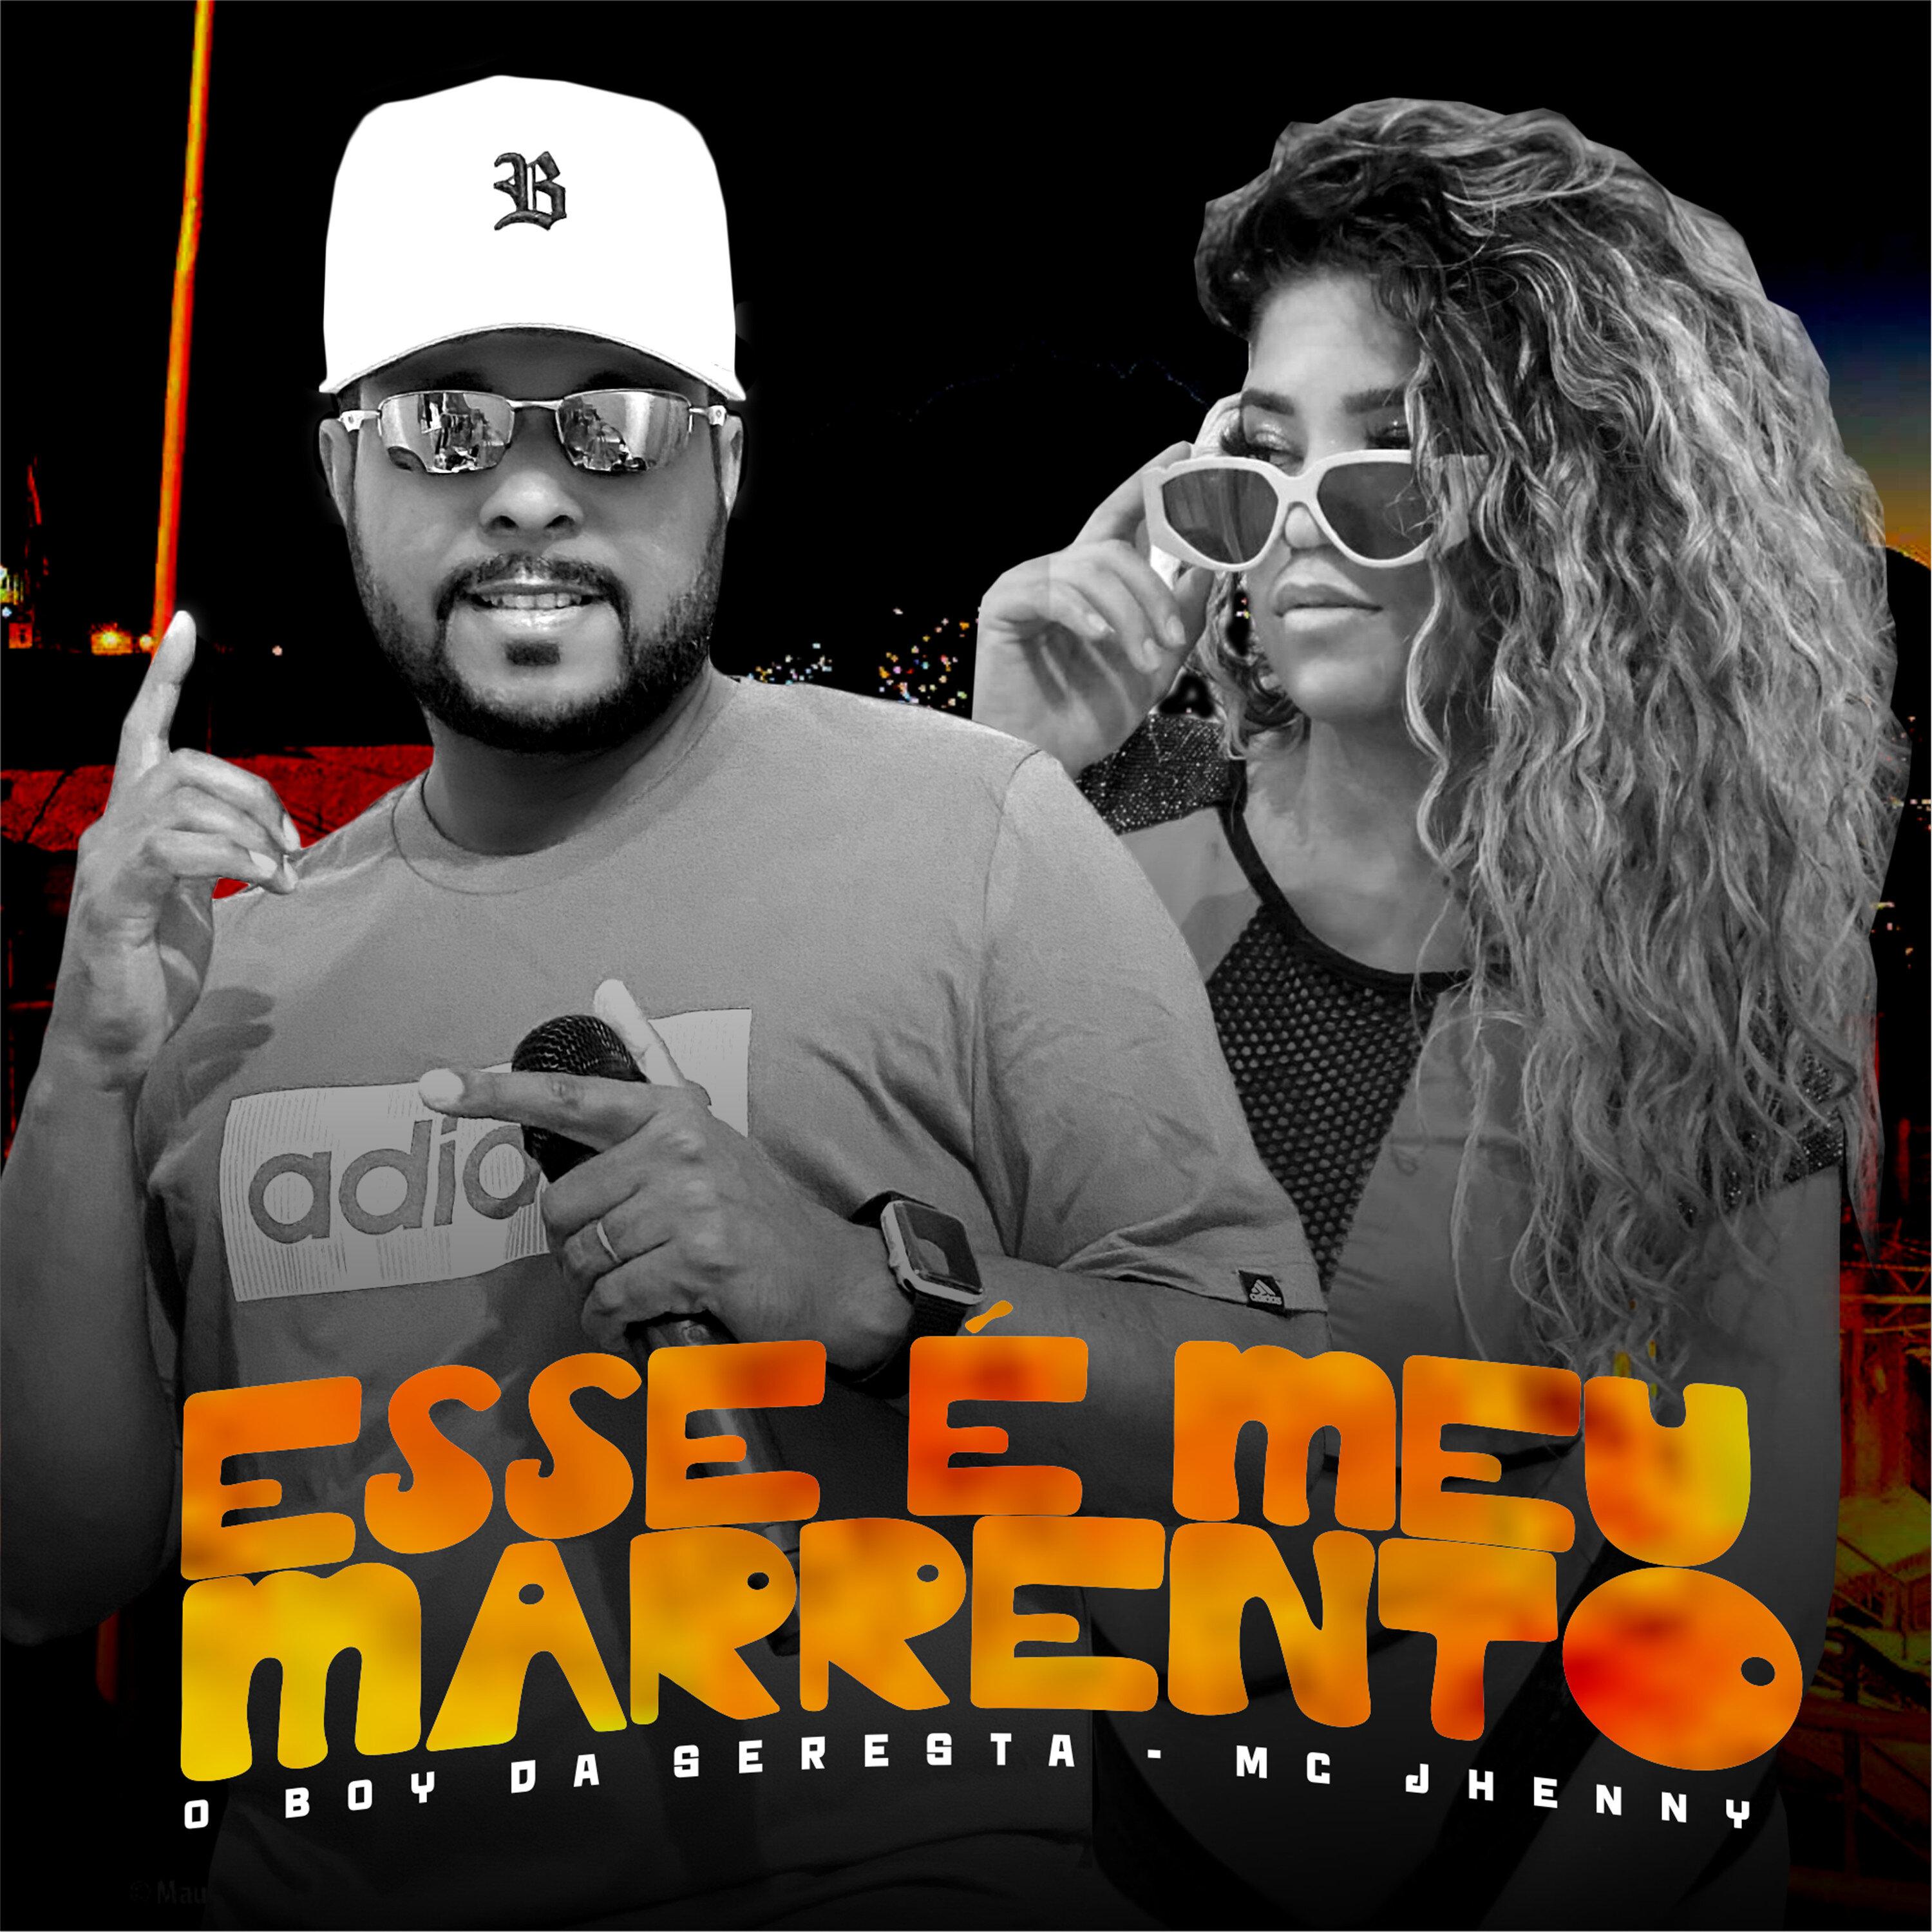 O Boy da Seresta - Esse É Meu Marrento (feat. mc jhenny)